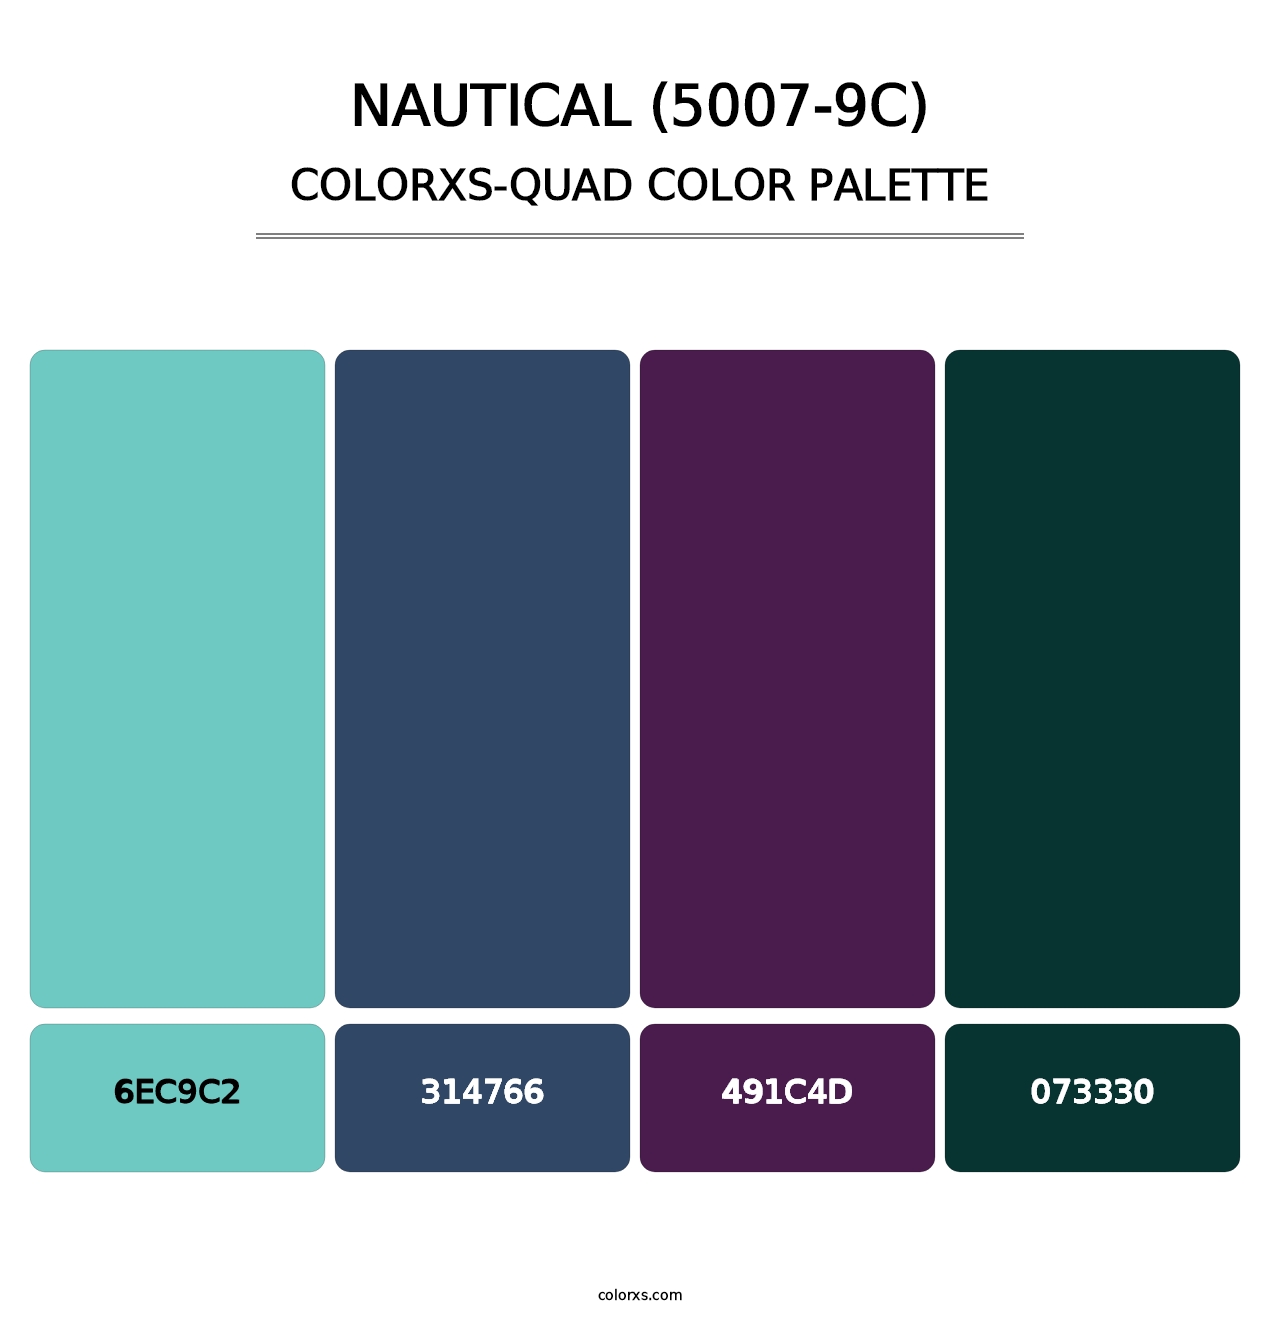 Nautical (5007-9C) - Colorxs Quad Palette